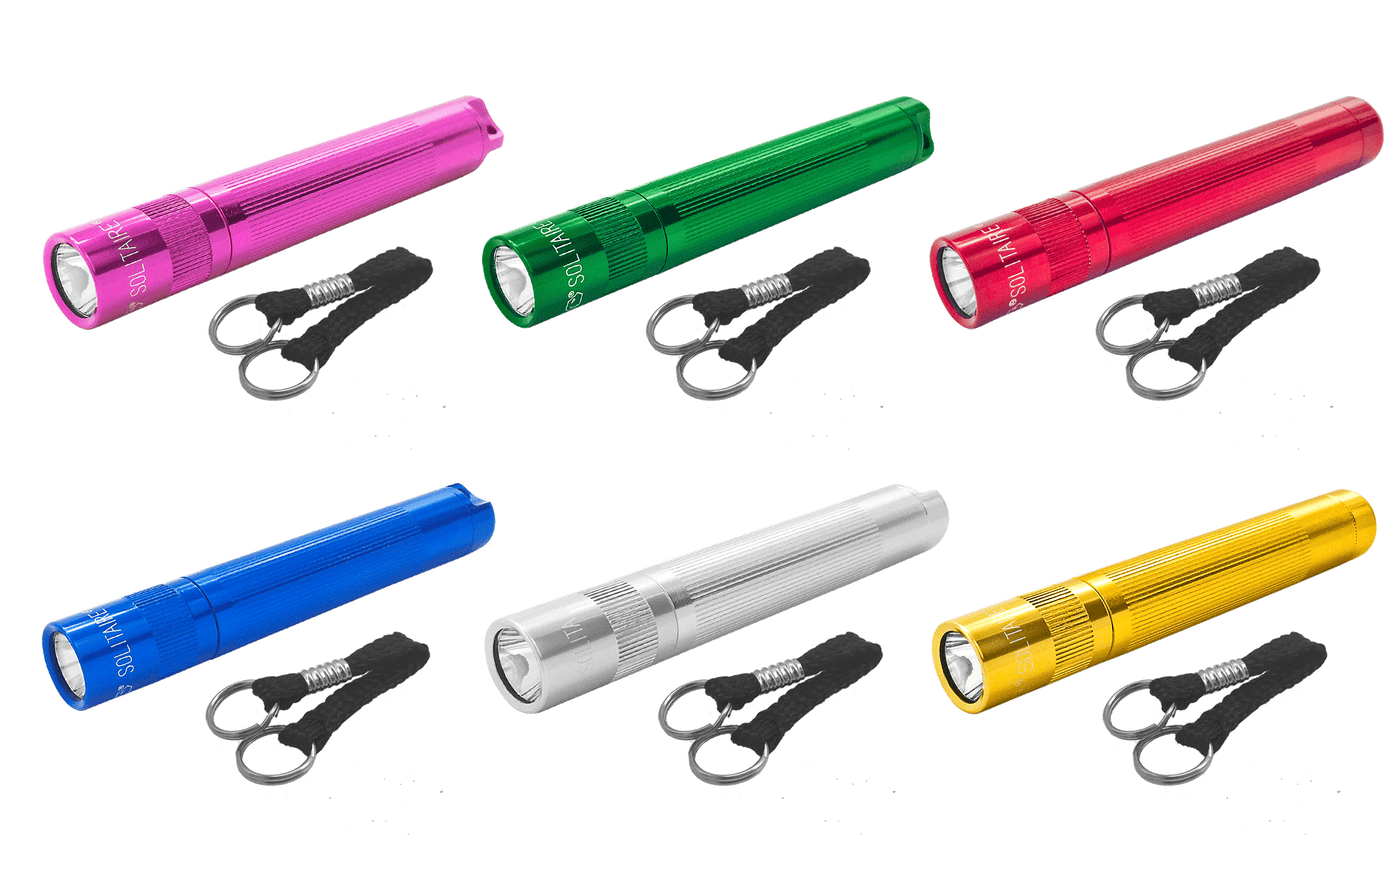 MAglite Solitaire keychain flashlight